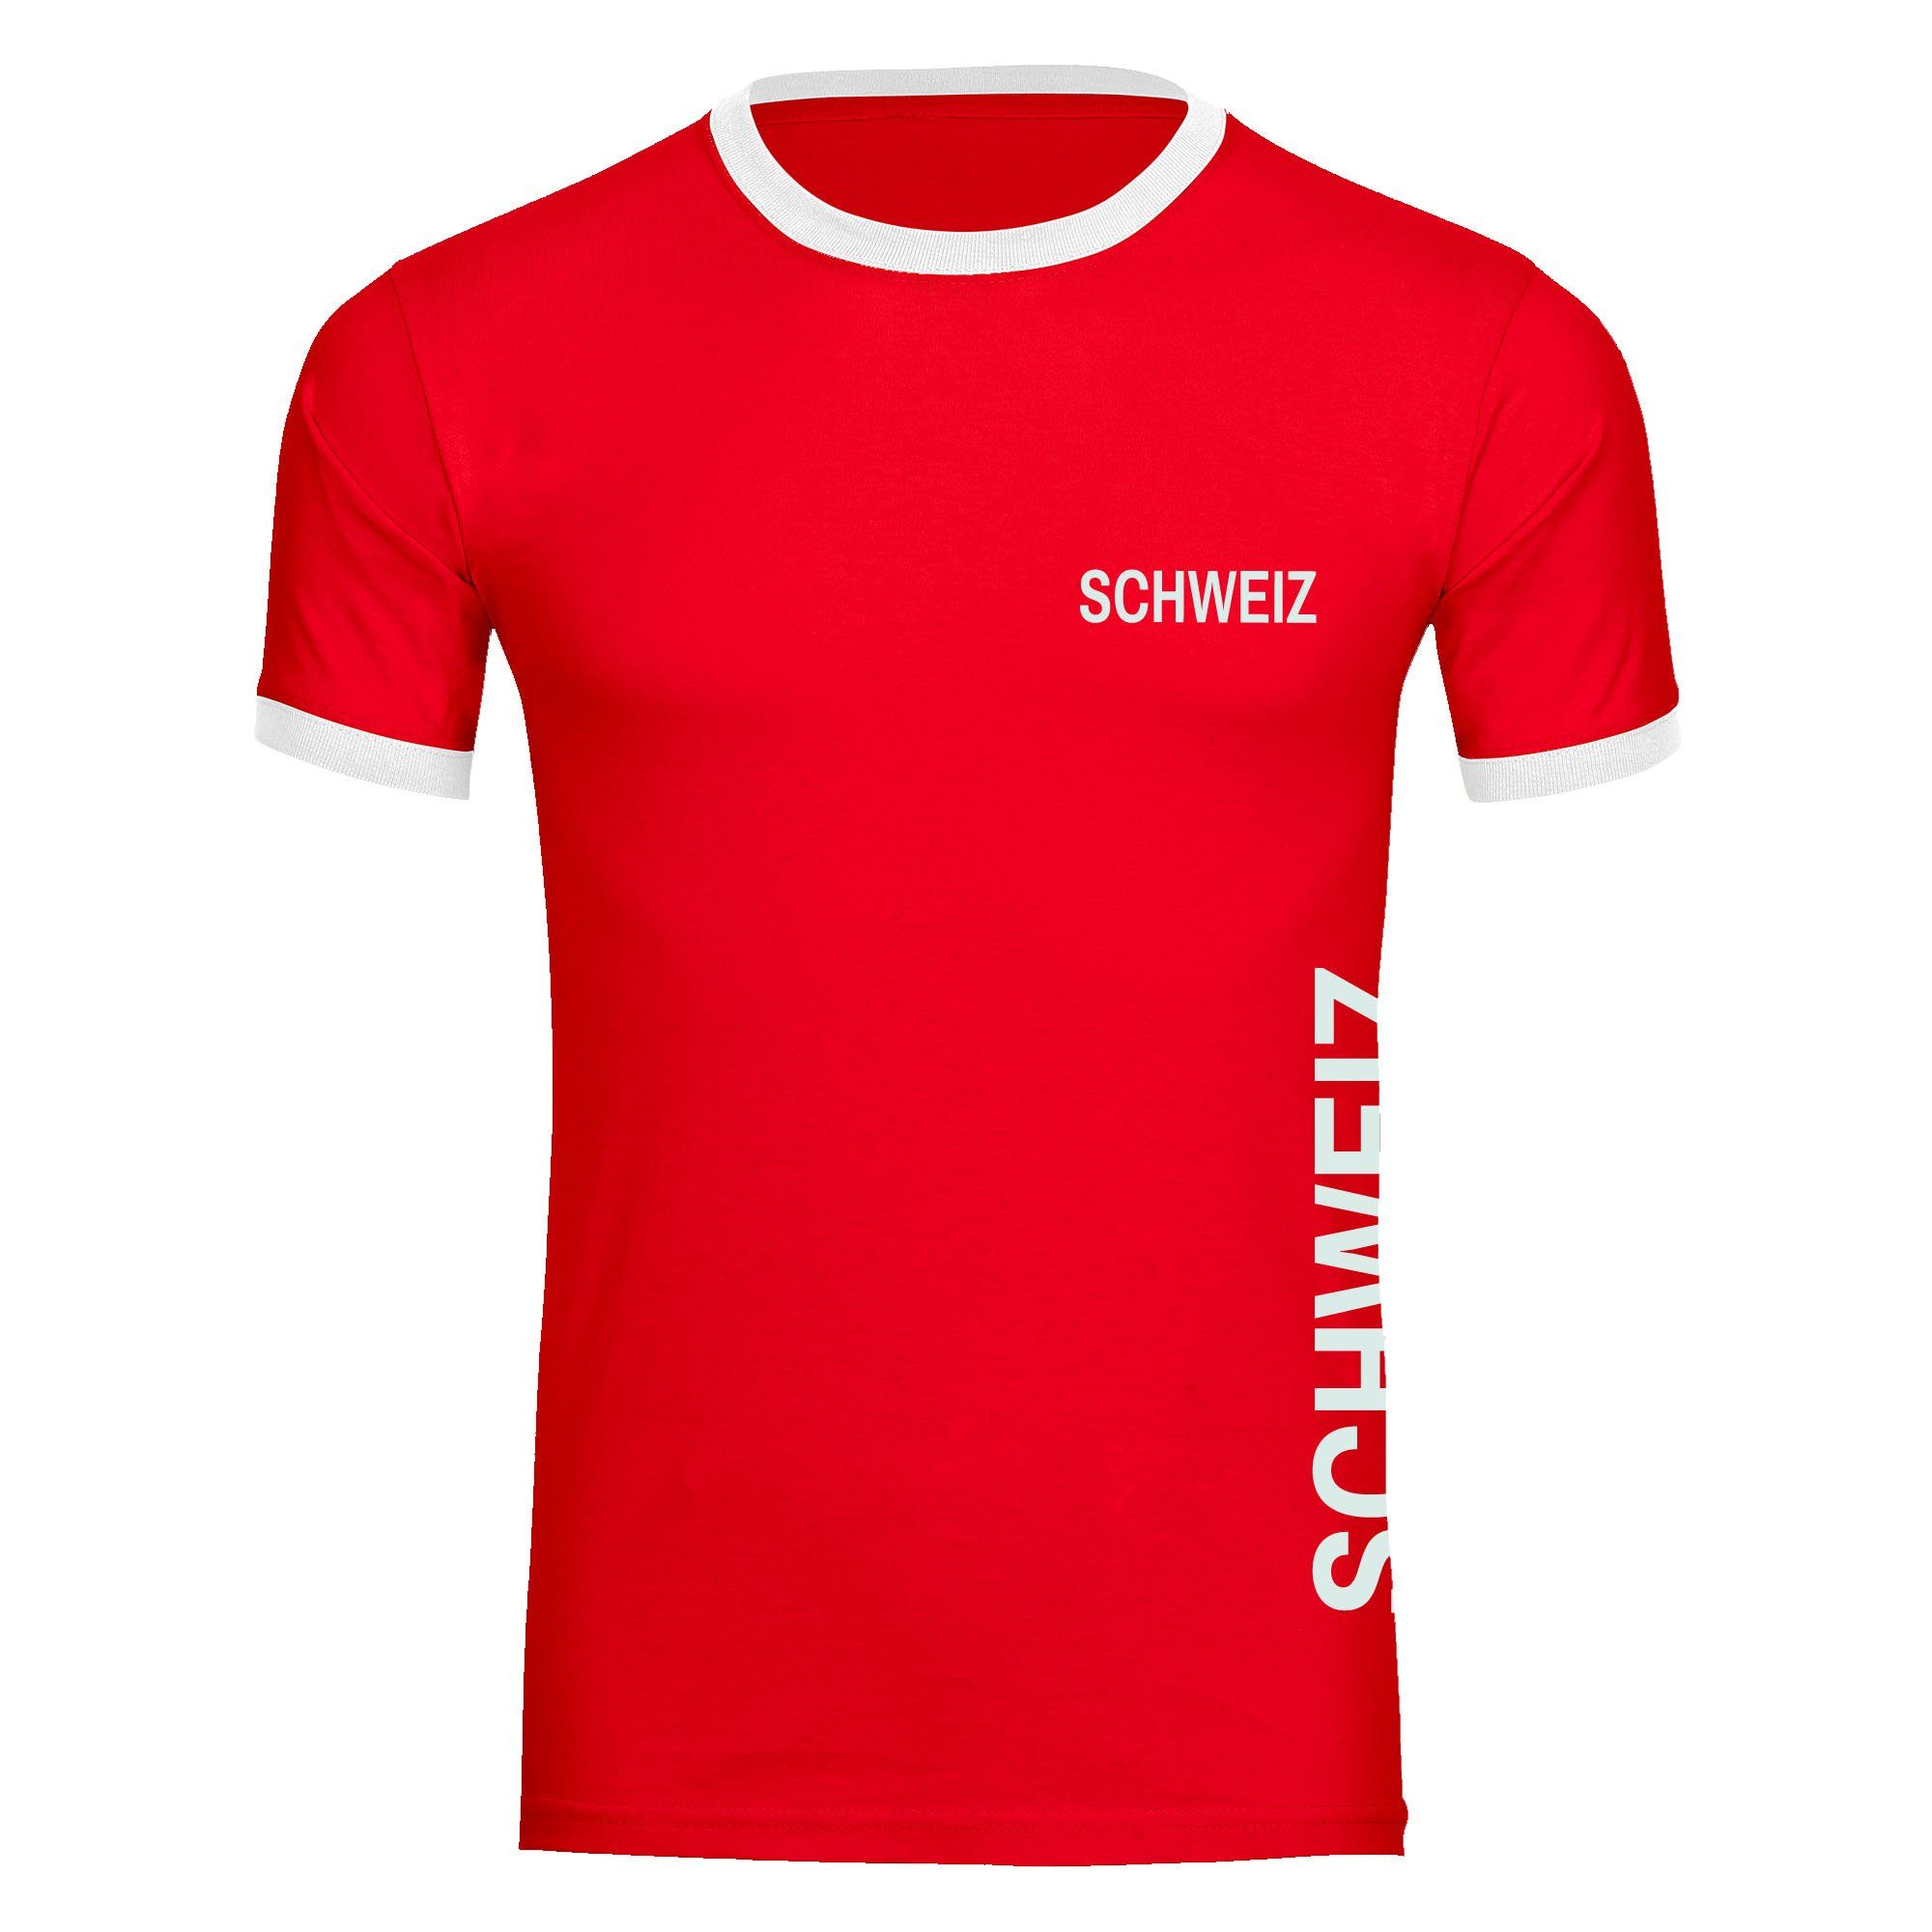 multifanshop T-Shirt Kontrast Schweiz - Brust & Seite - Männer